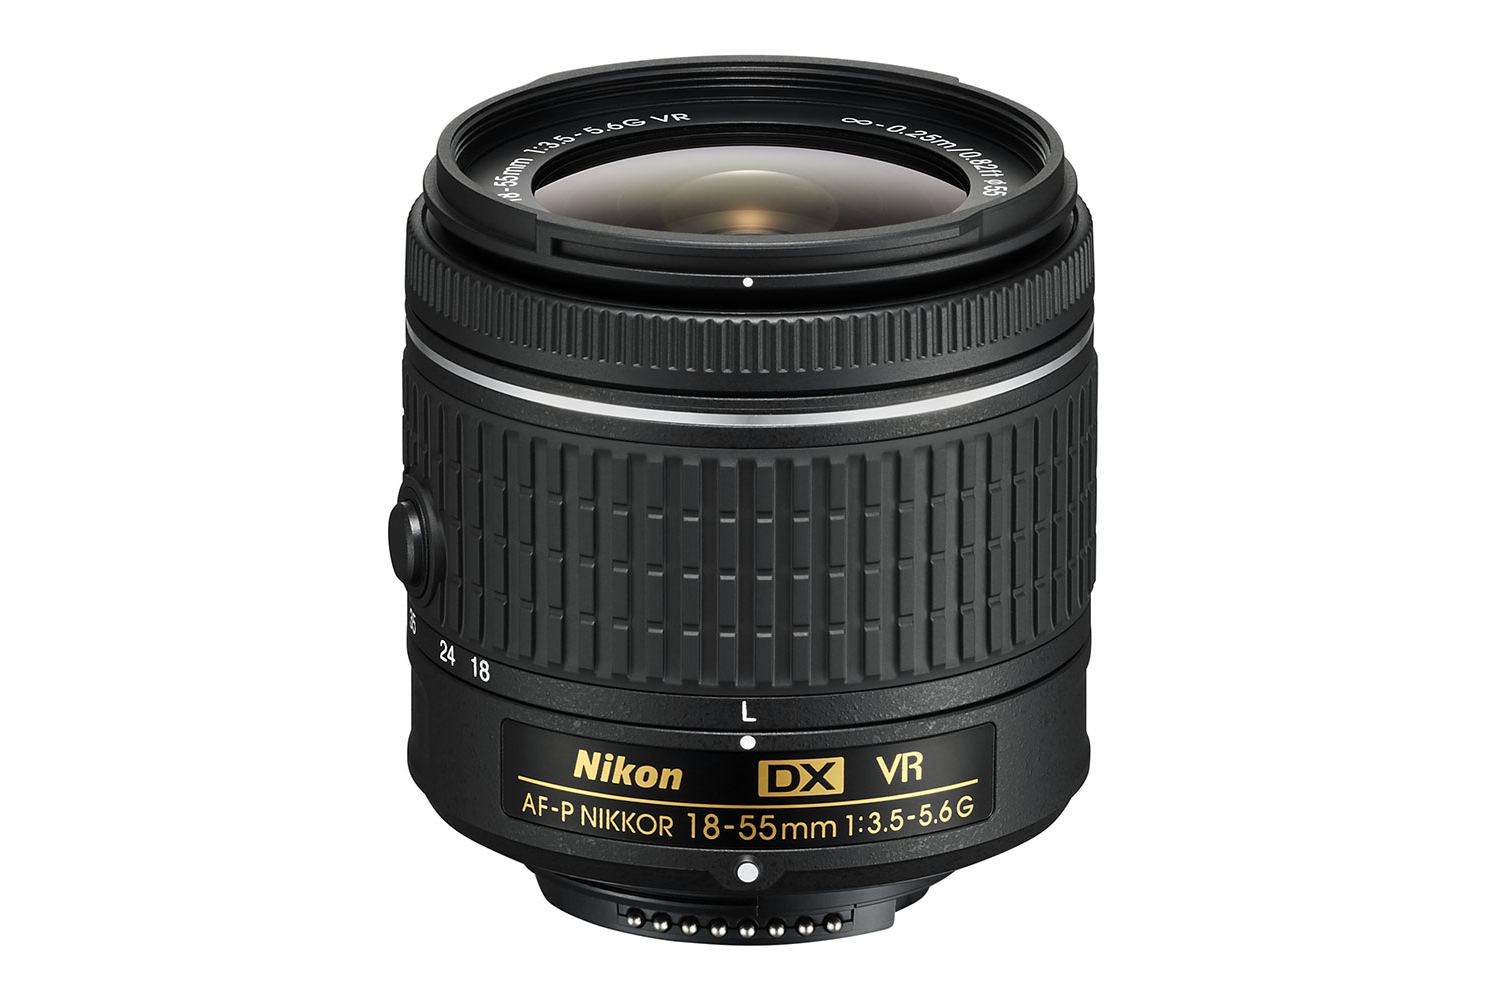 nikon d3400 dslr entry level camera nikkor lenses dx afp 18 55 vr 3